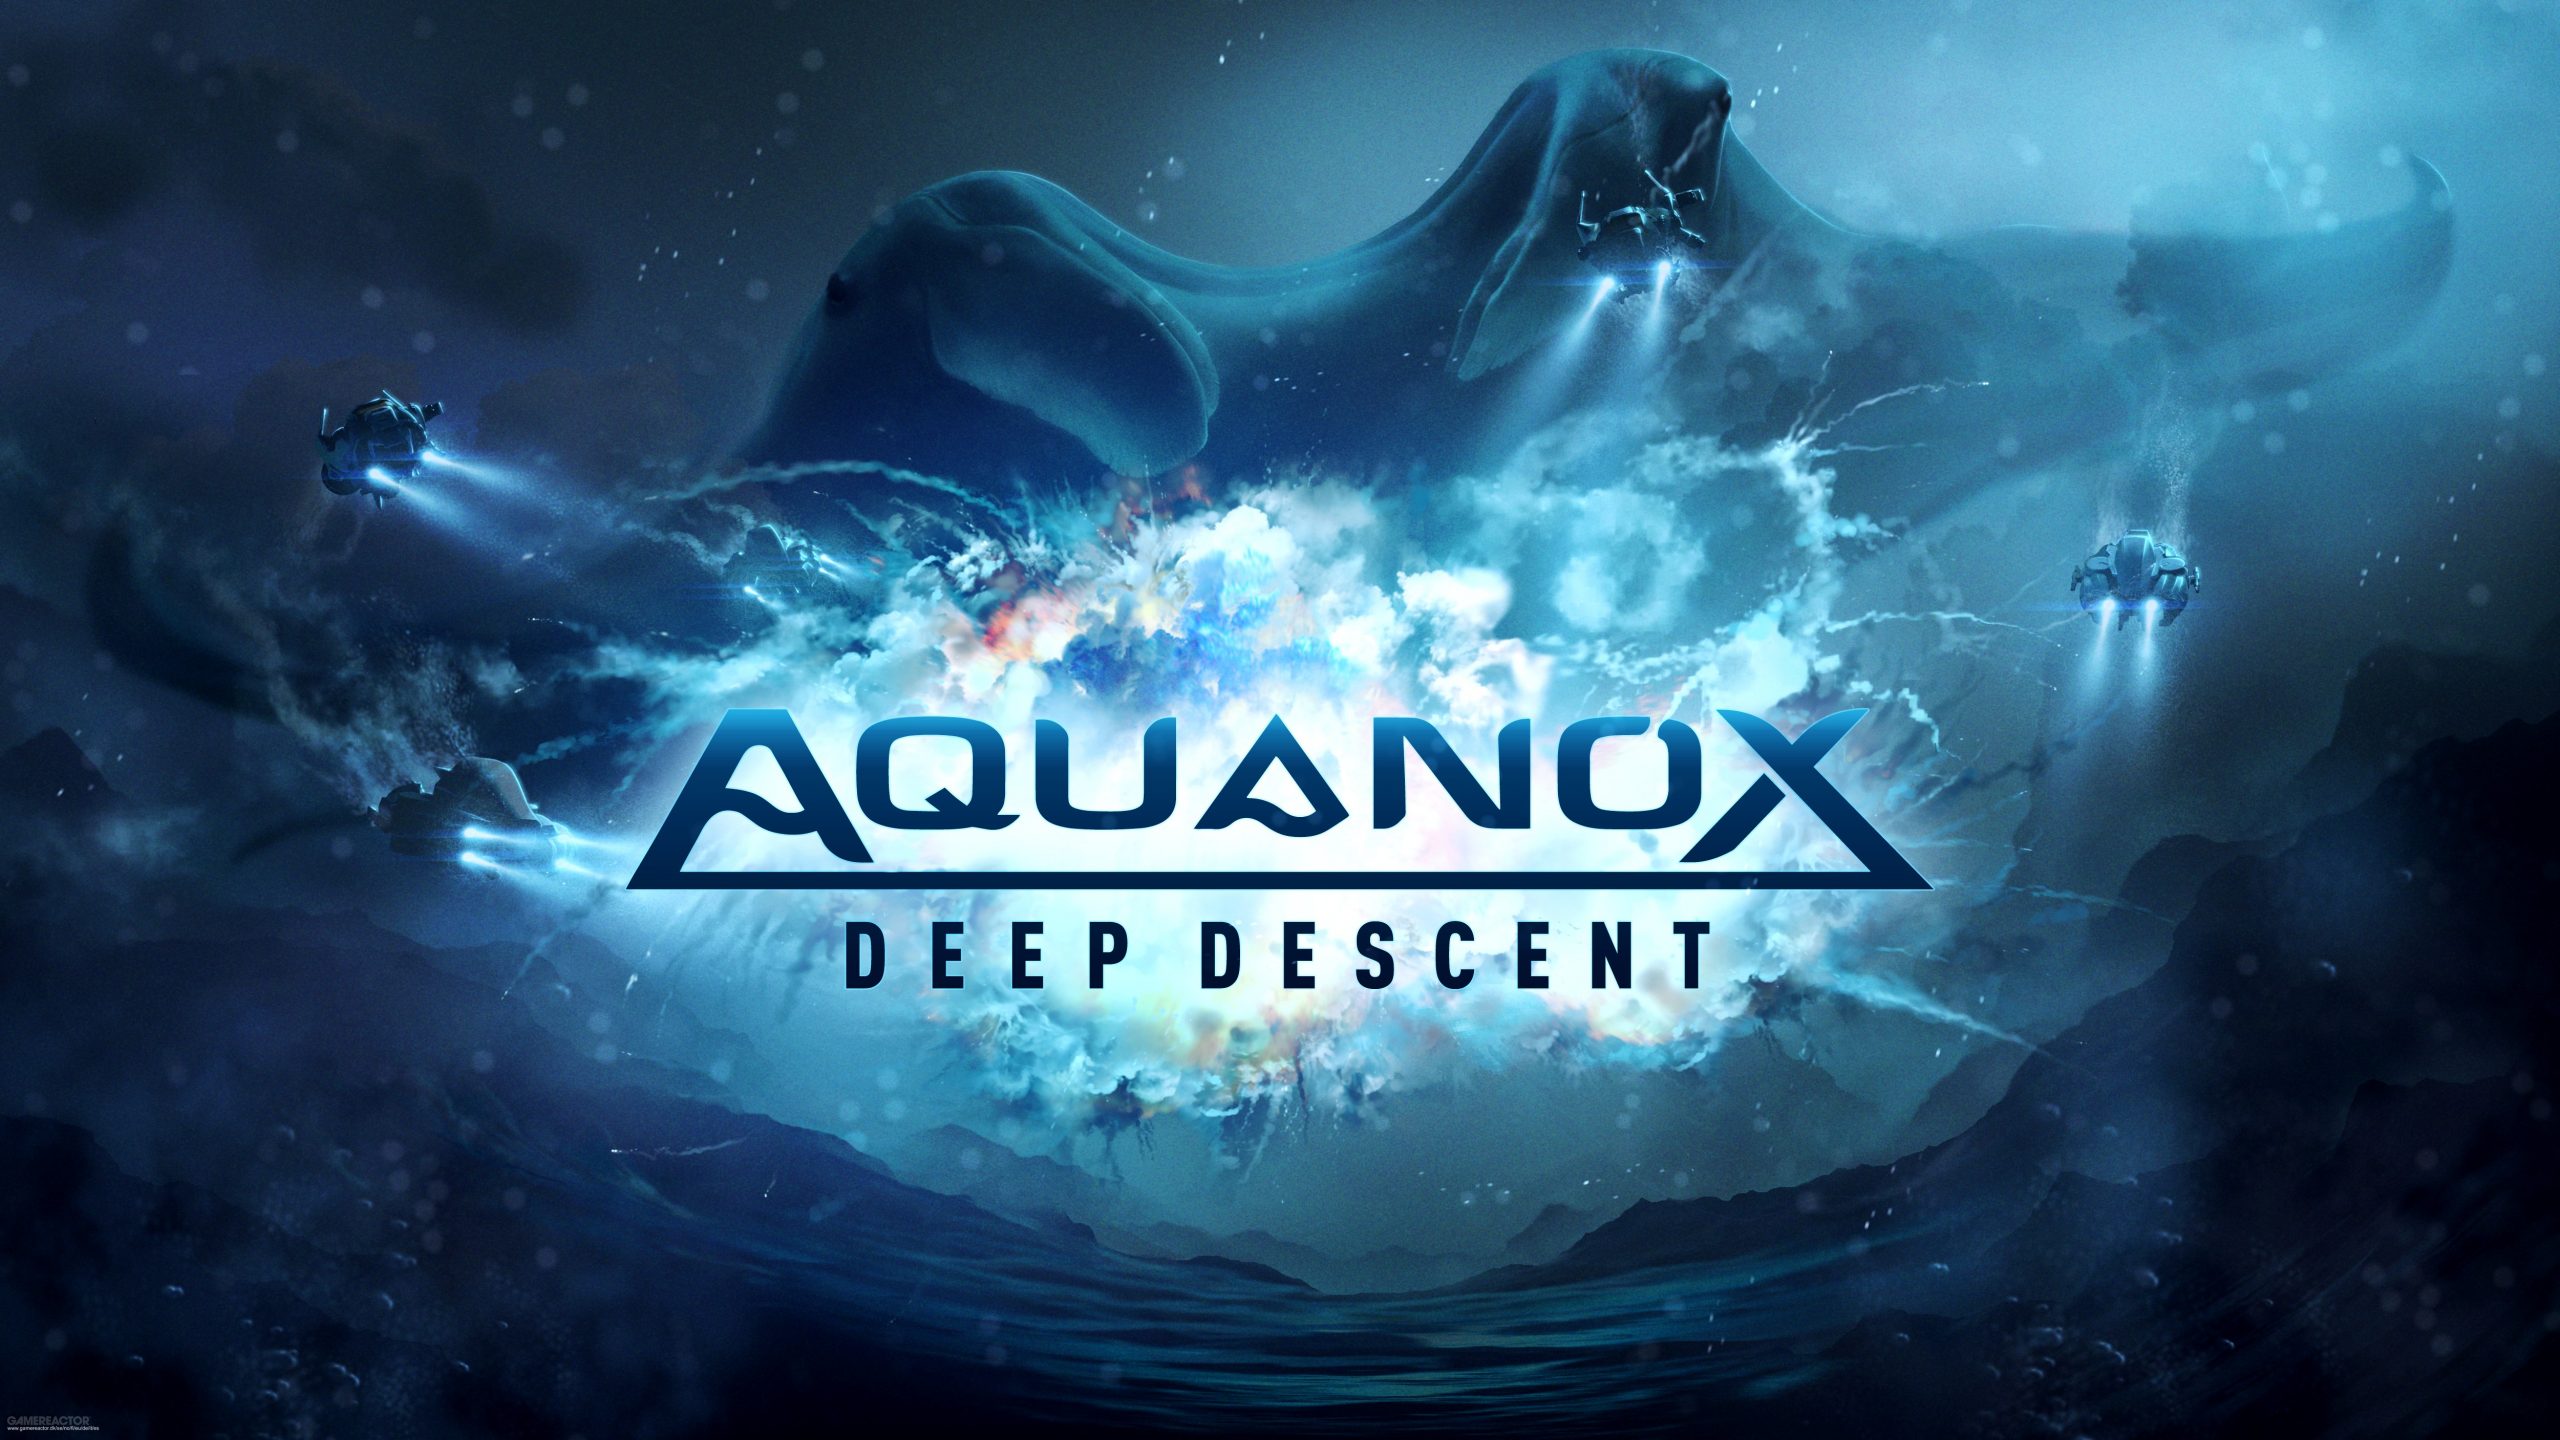 aquanox gog download free